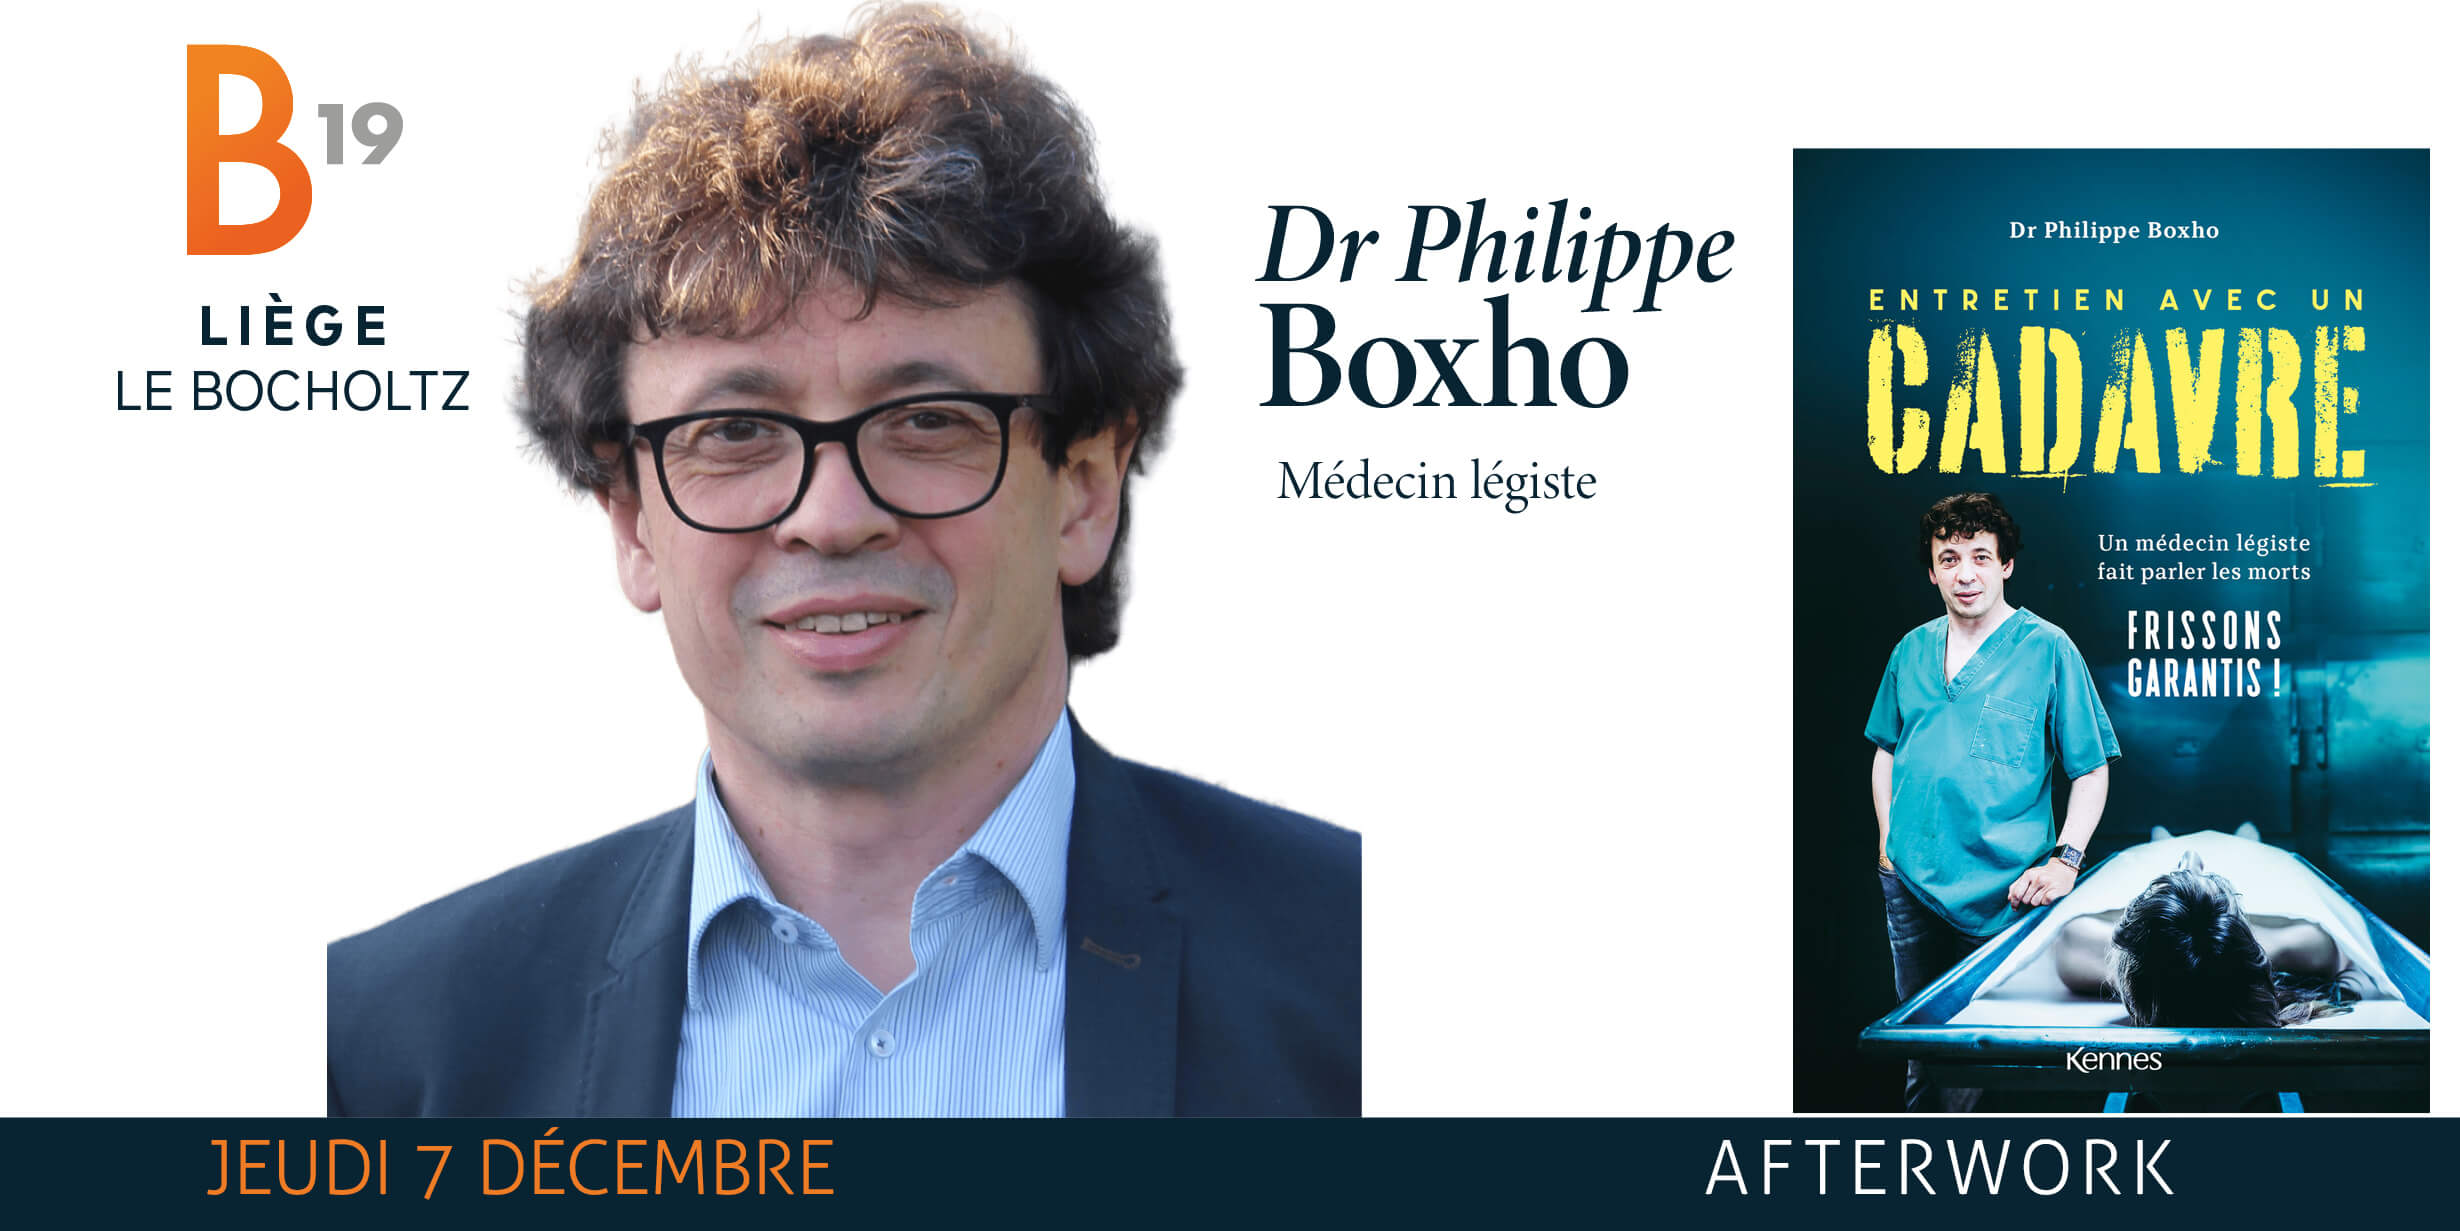 Le Dr Philippe Boxho, vice-président de l'Ordre des médecins, démissionne -  Medi-Sphere